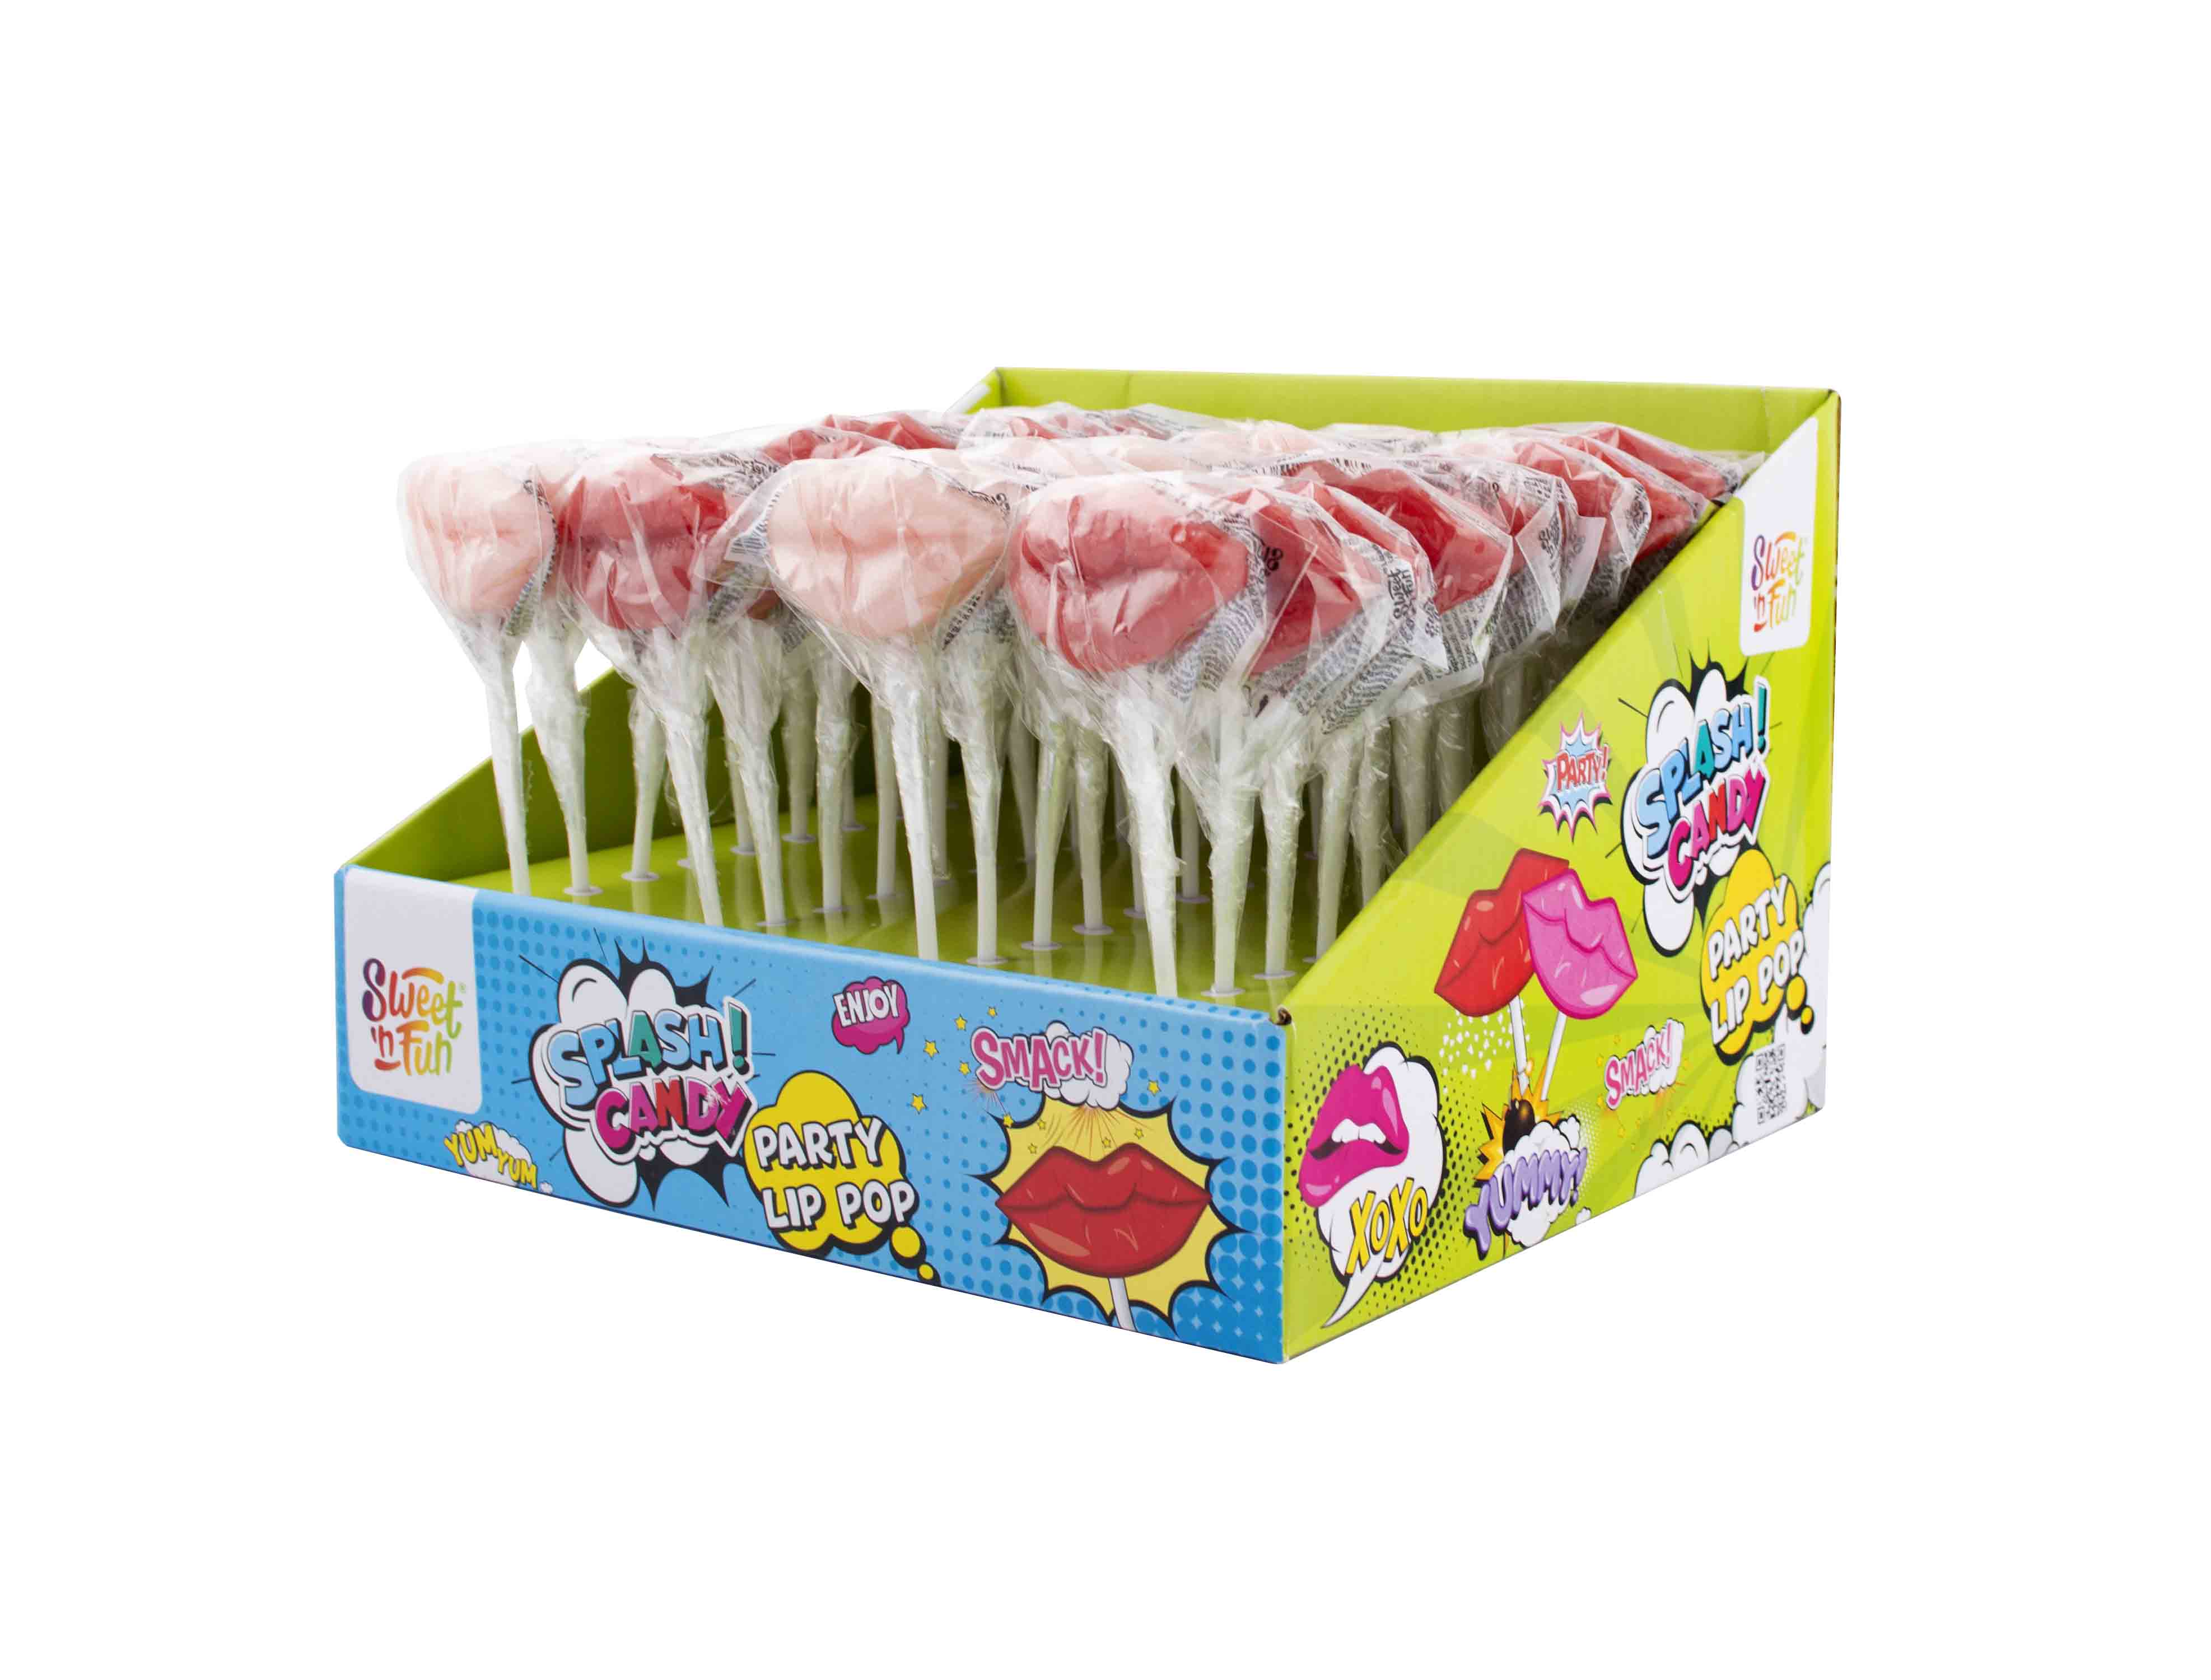 Splash Candy Party Lip Pop - lízátko polibek 12g